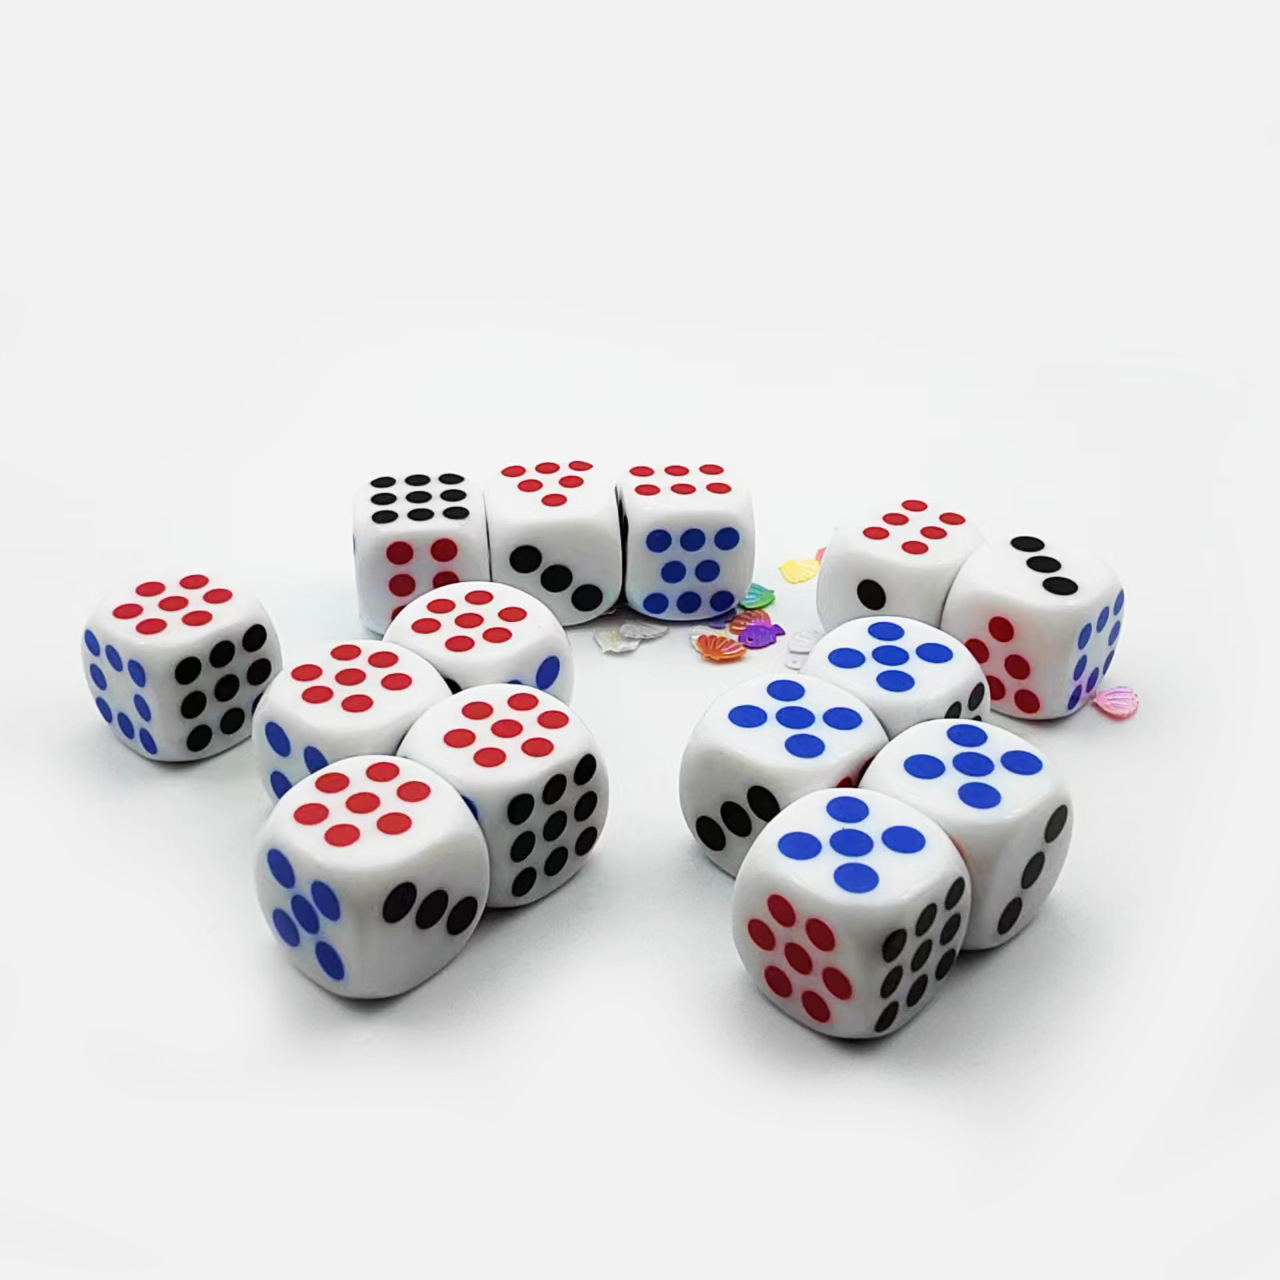 骰子 游戏 玩 - Pixabay上的免费图片 - Pixabay